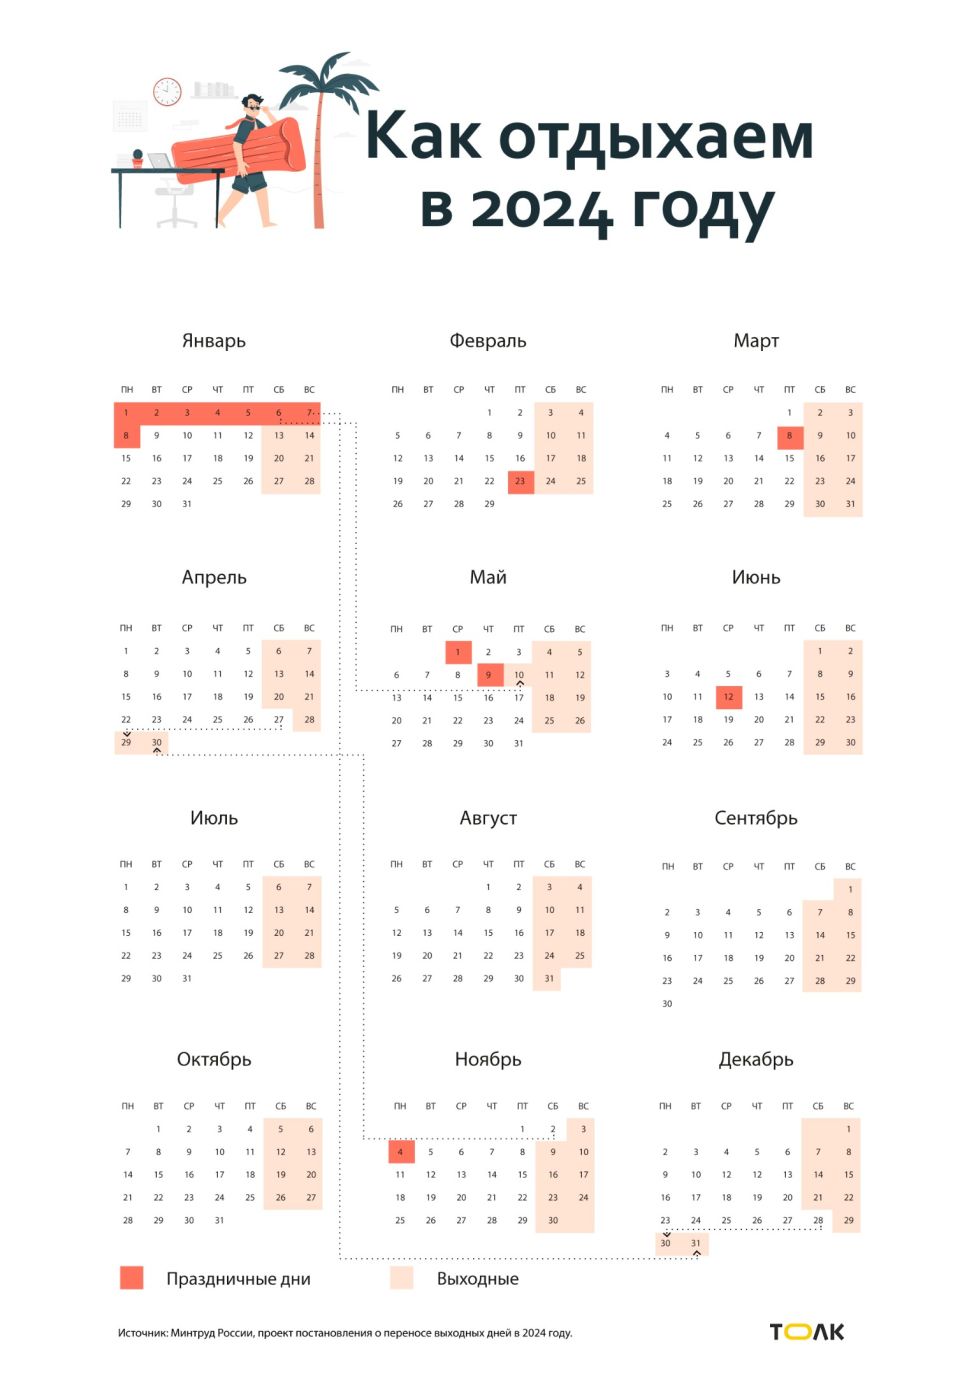 Календарь выходных дней в 2024 году. Проект